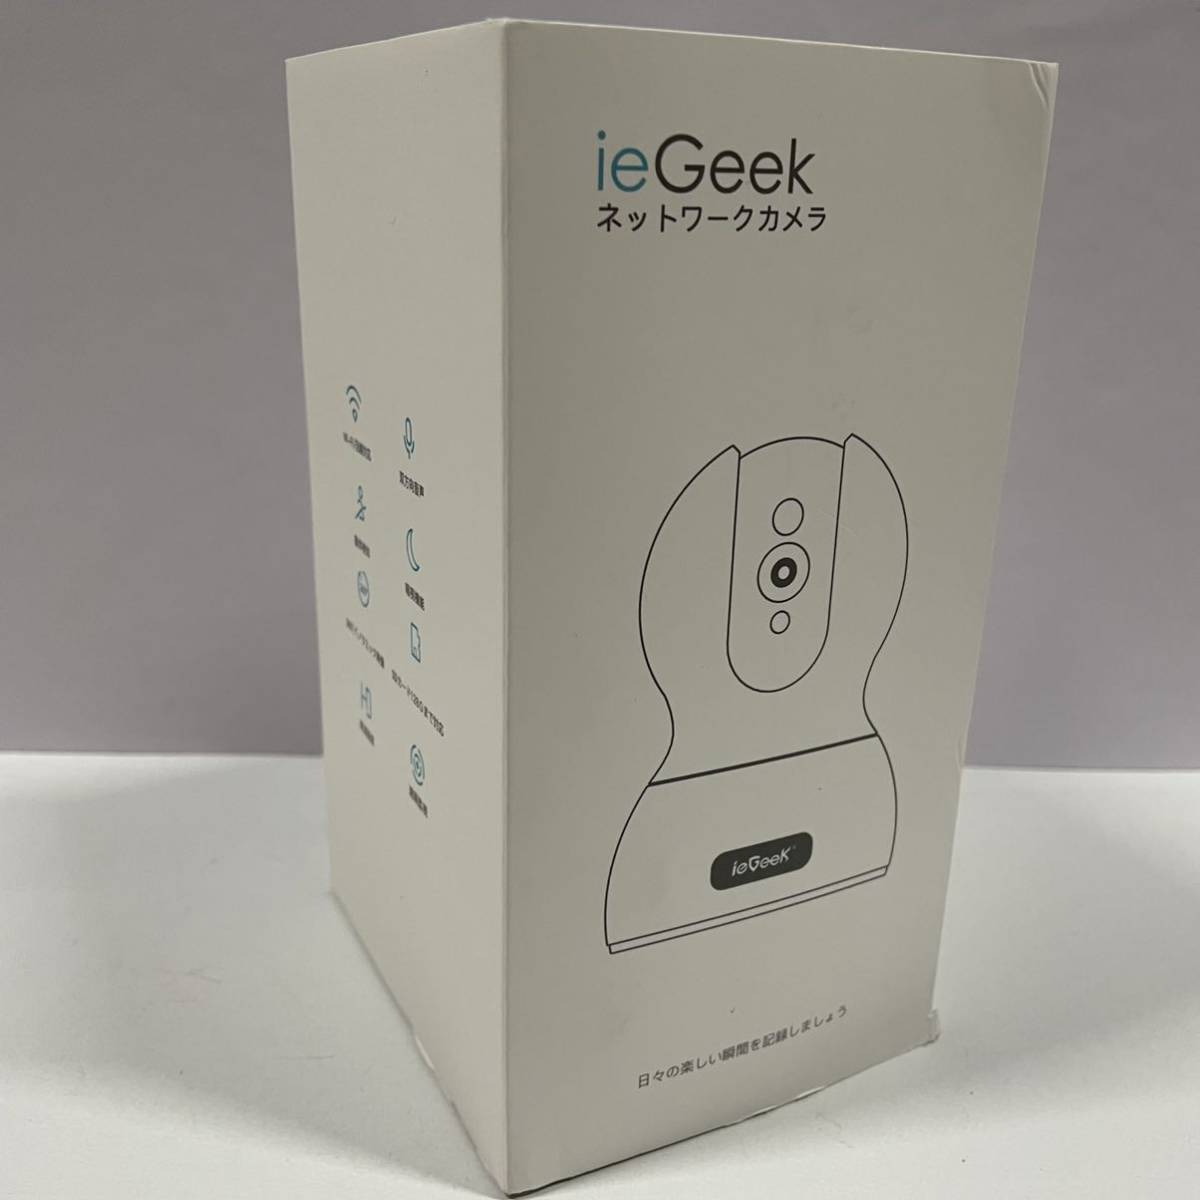  новейший усиленный версия 500 десять тысяч пикселей ieGeek сеть камера домашнее животное камера IP предотвращение преступления мониторинг камера детский монитор wifi камера салон камера 1944P беспроводной 